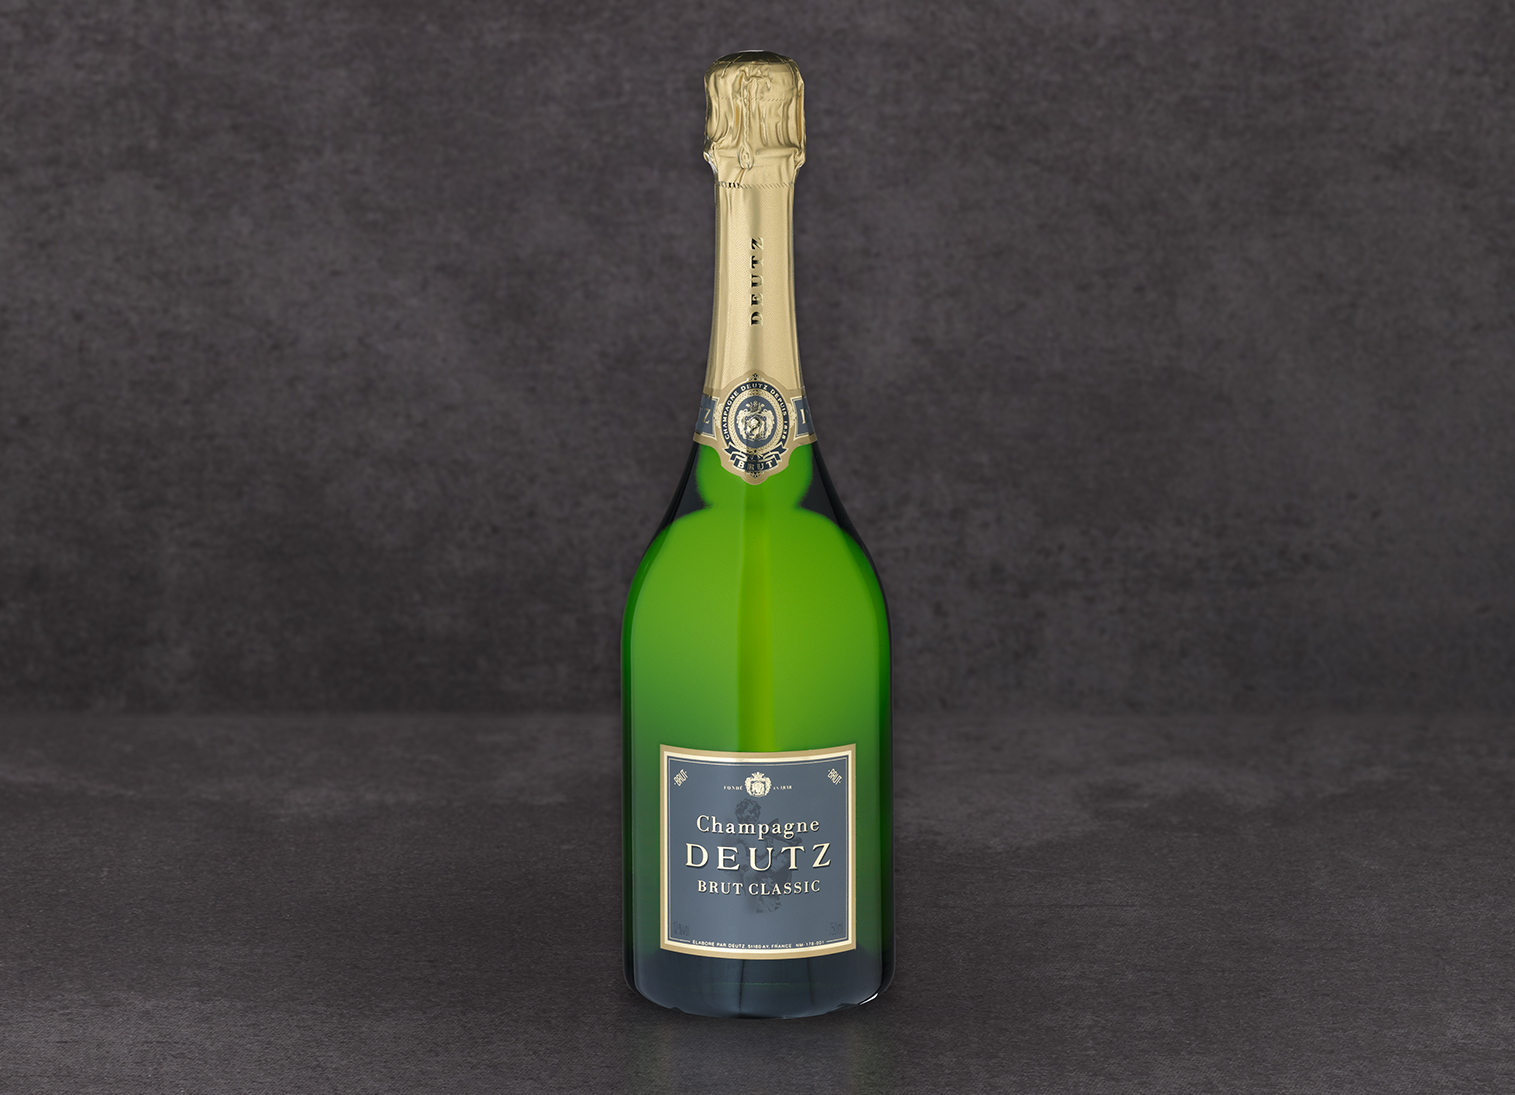 Champagner Brut Classic, Deutz